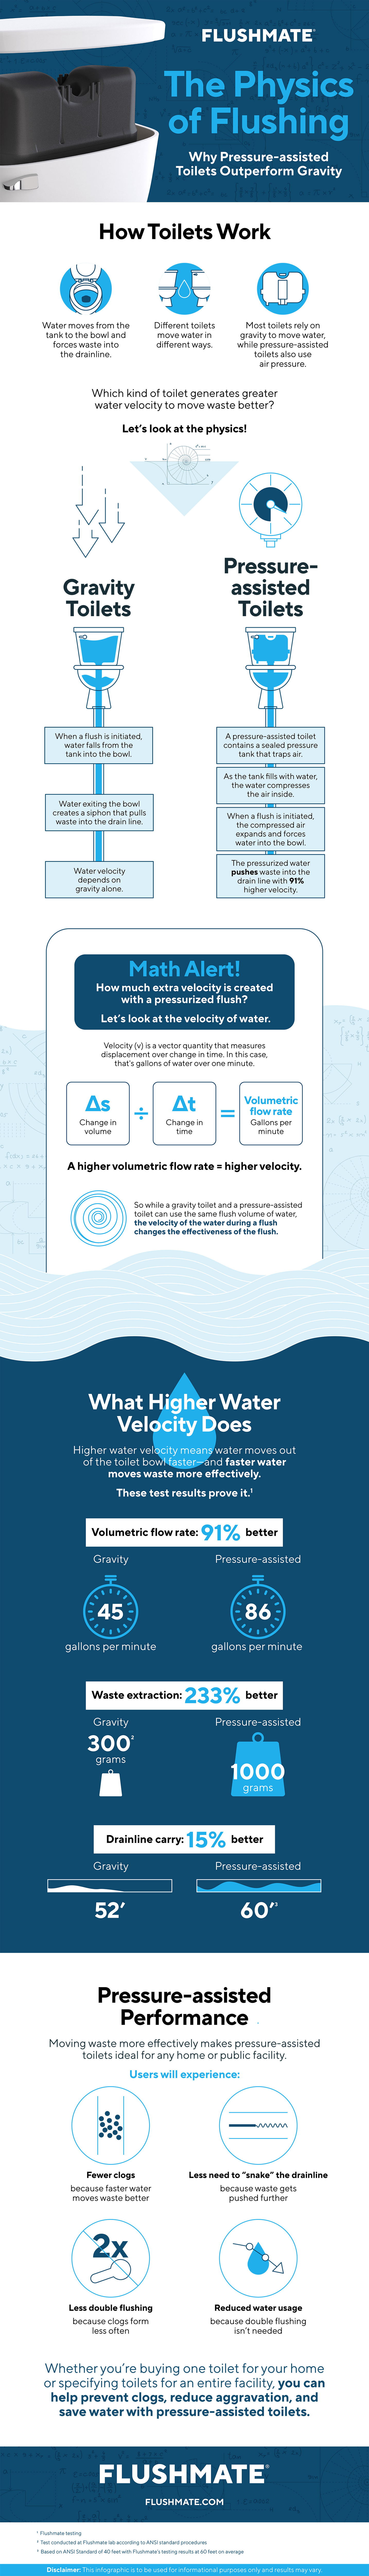 Flushmate - Physics of Flushing Infographic